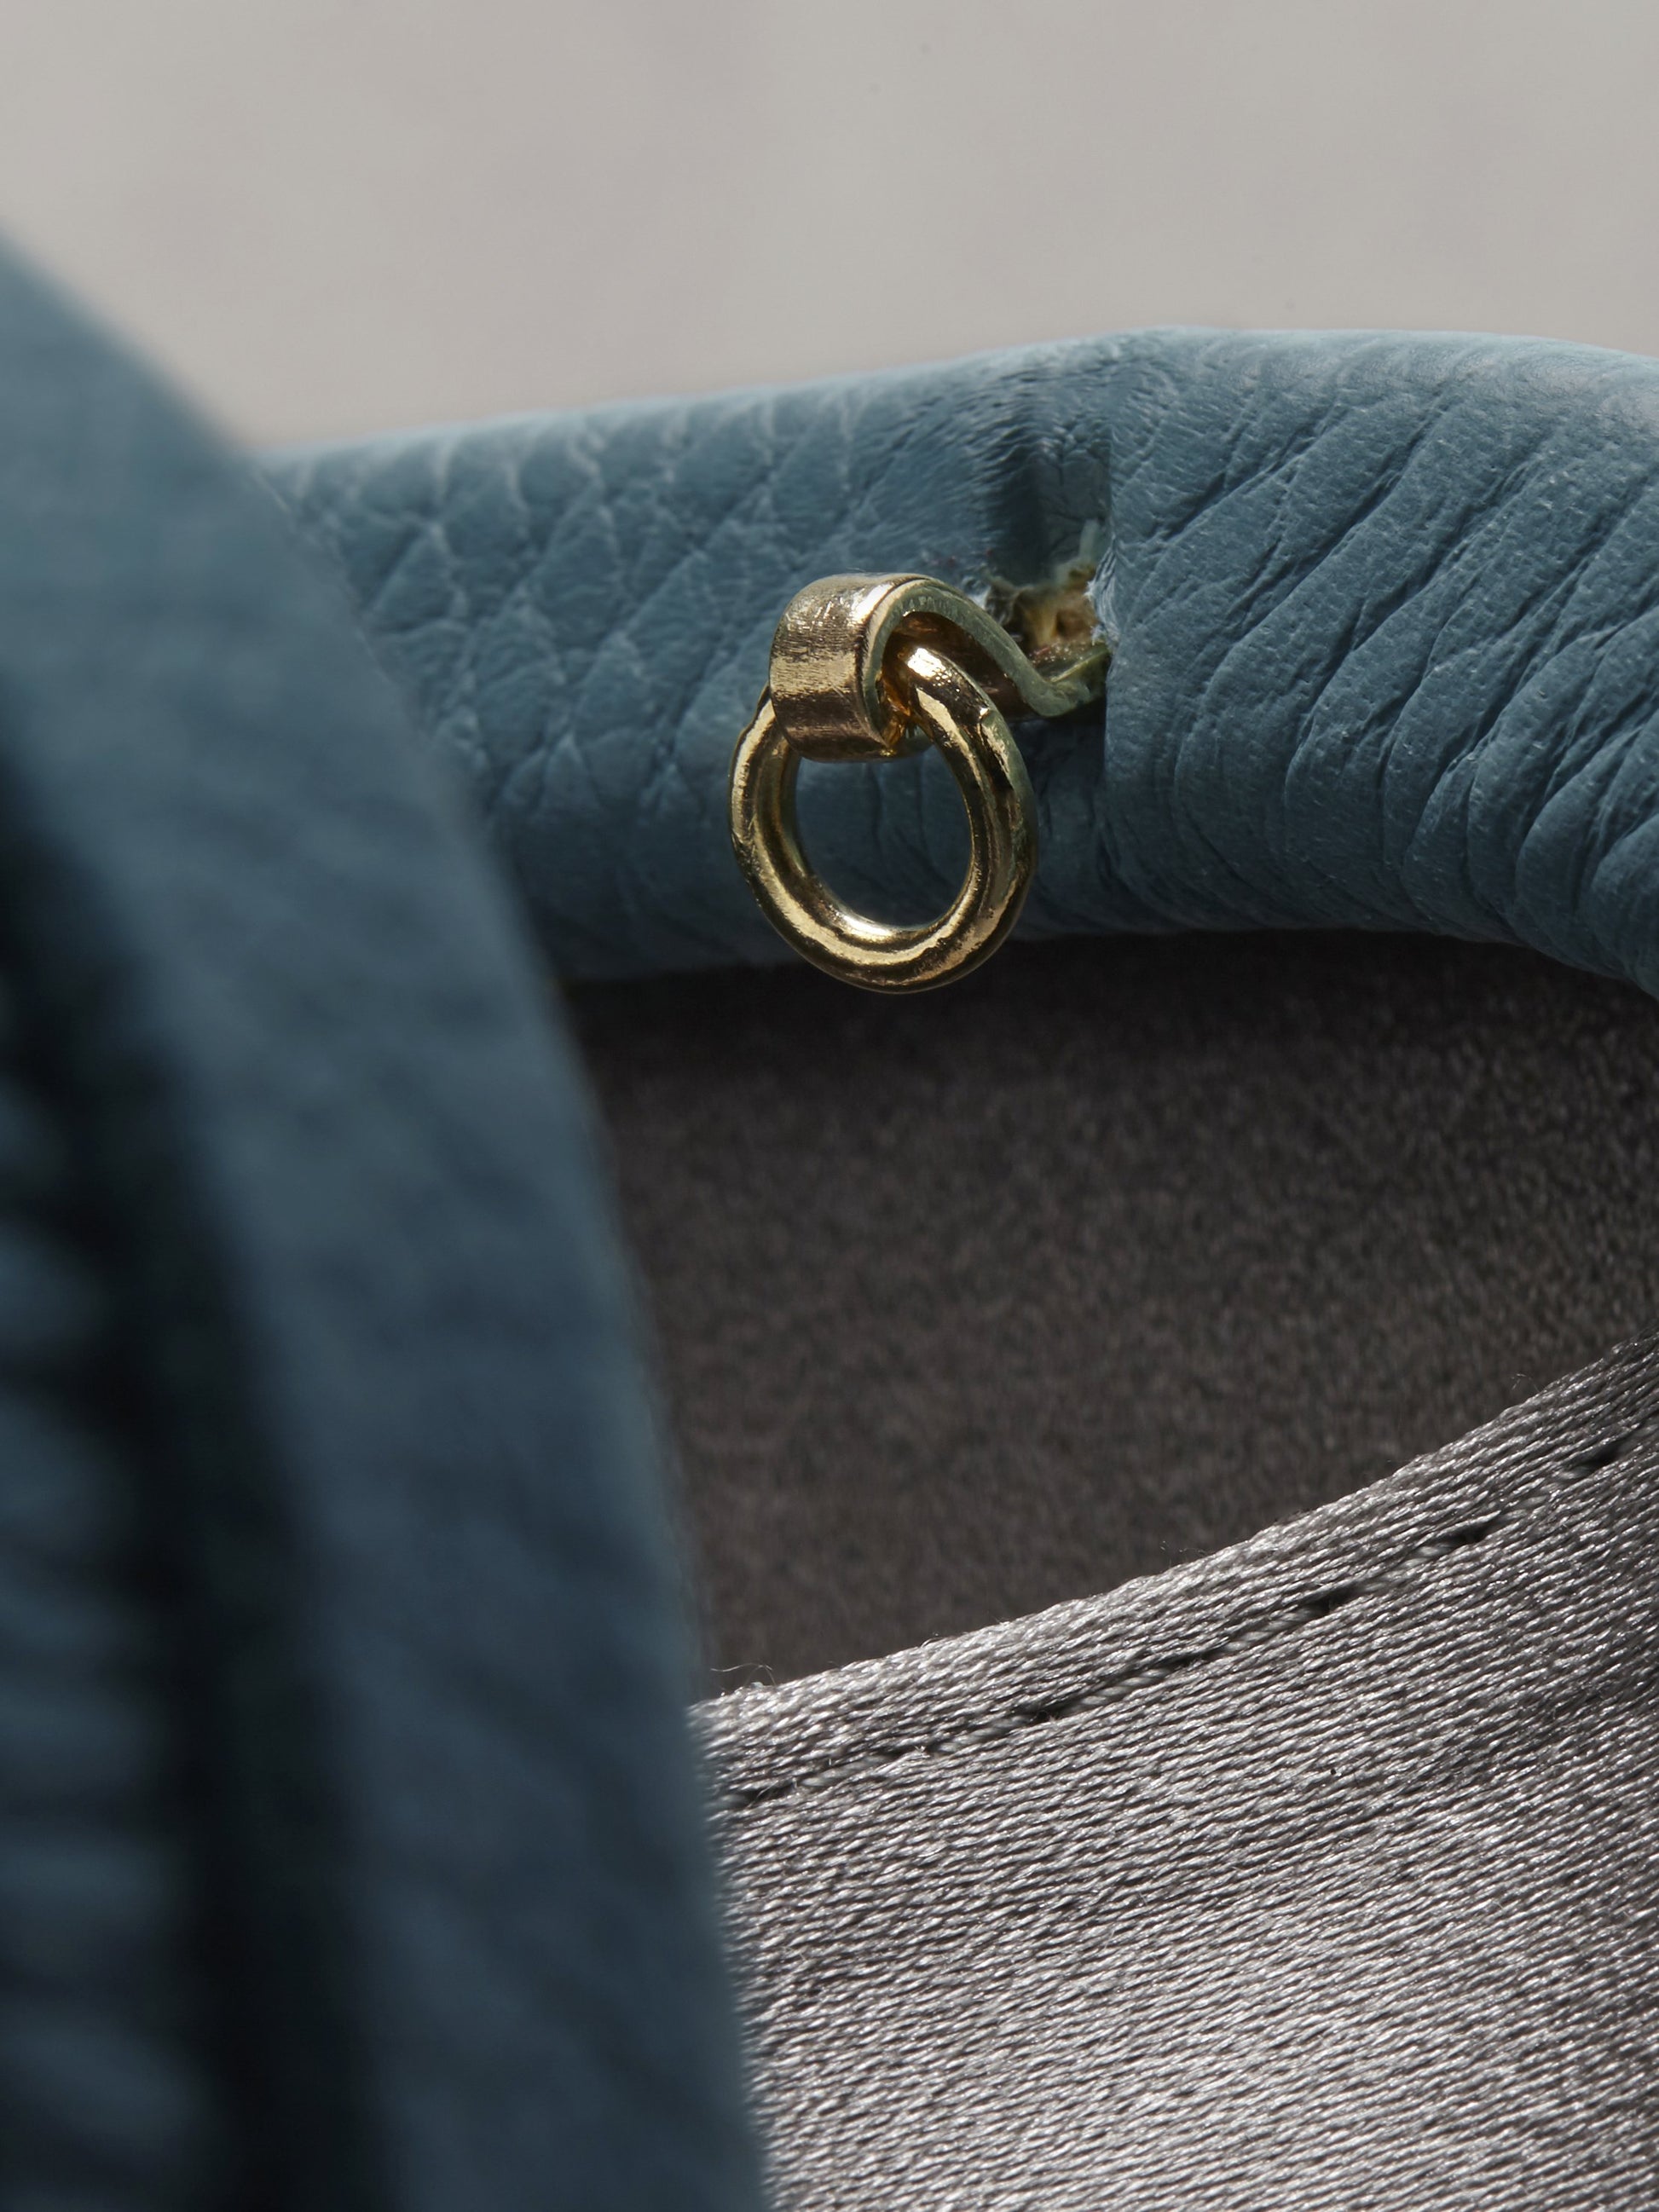 Atelier Verdi blue leather clutch bag, gold chain clasp detail